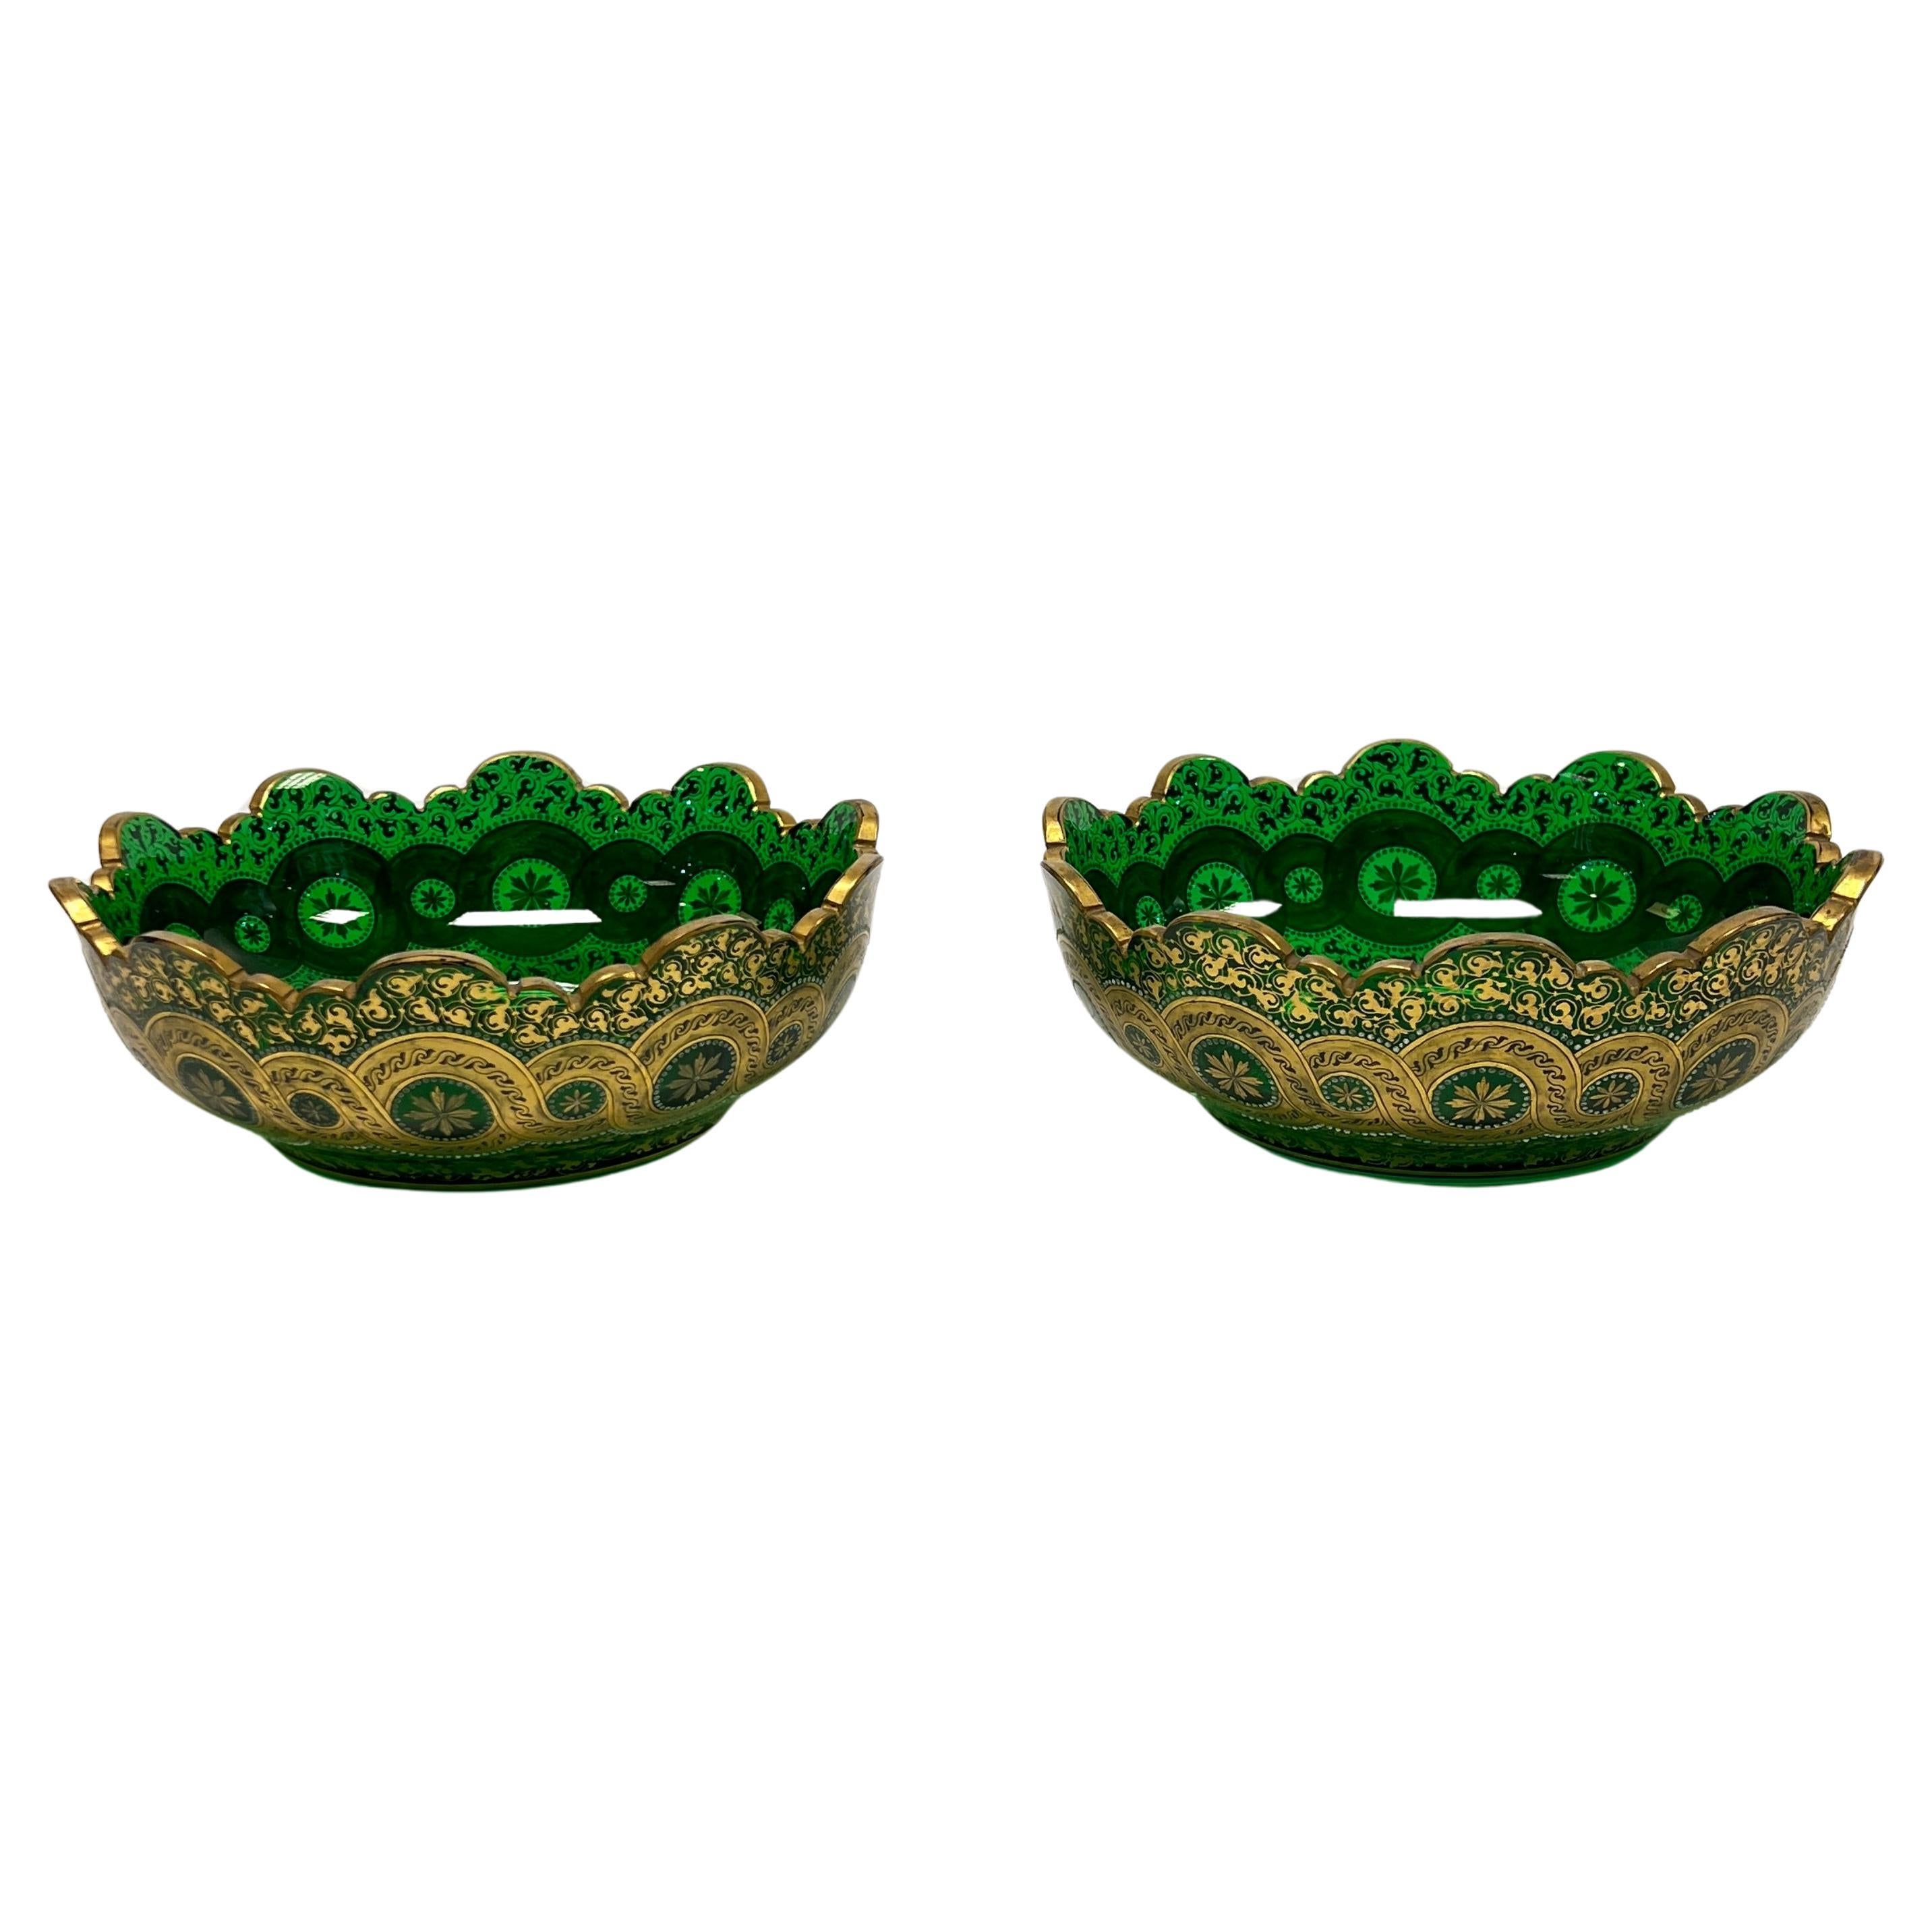 Pair Antique Bohemian Gilt Green Glass Centerpiece Bowls